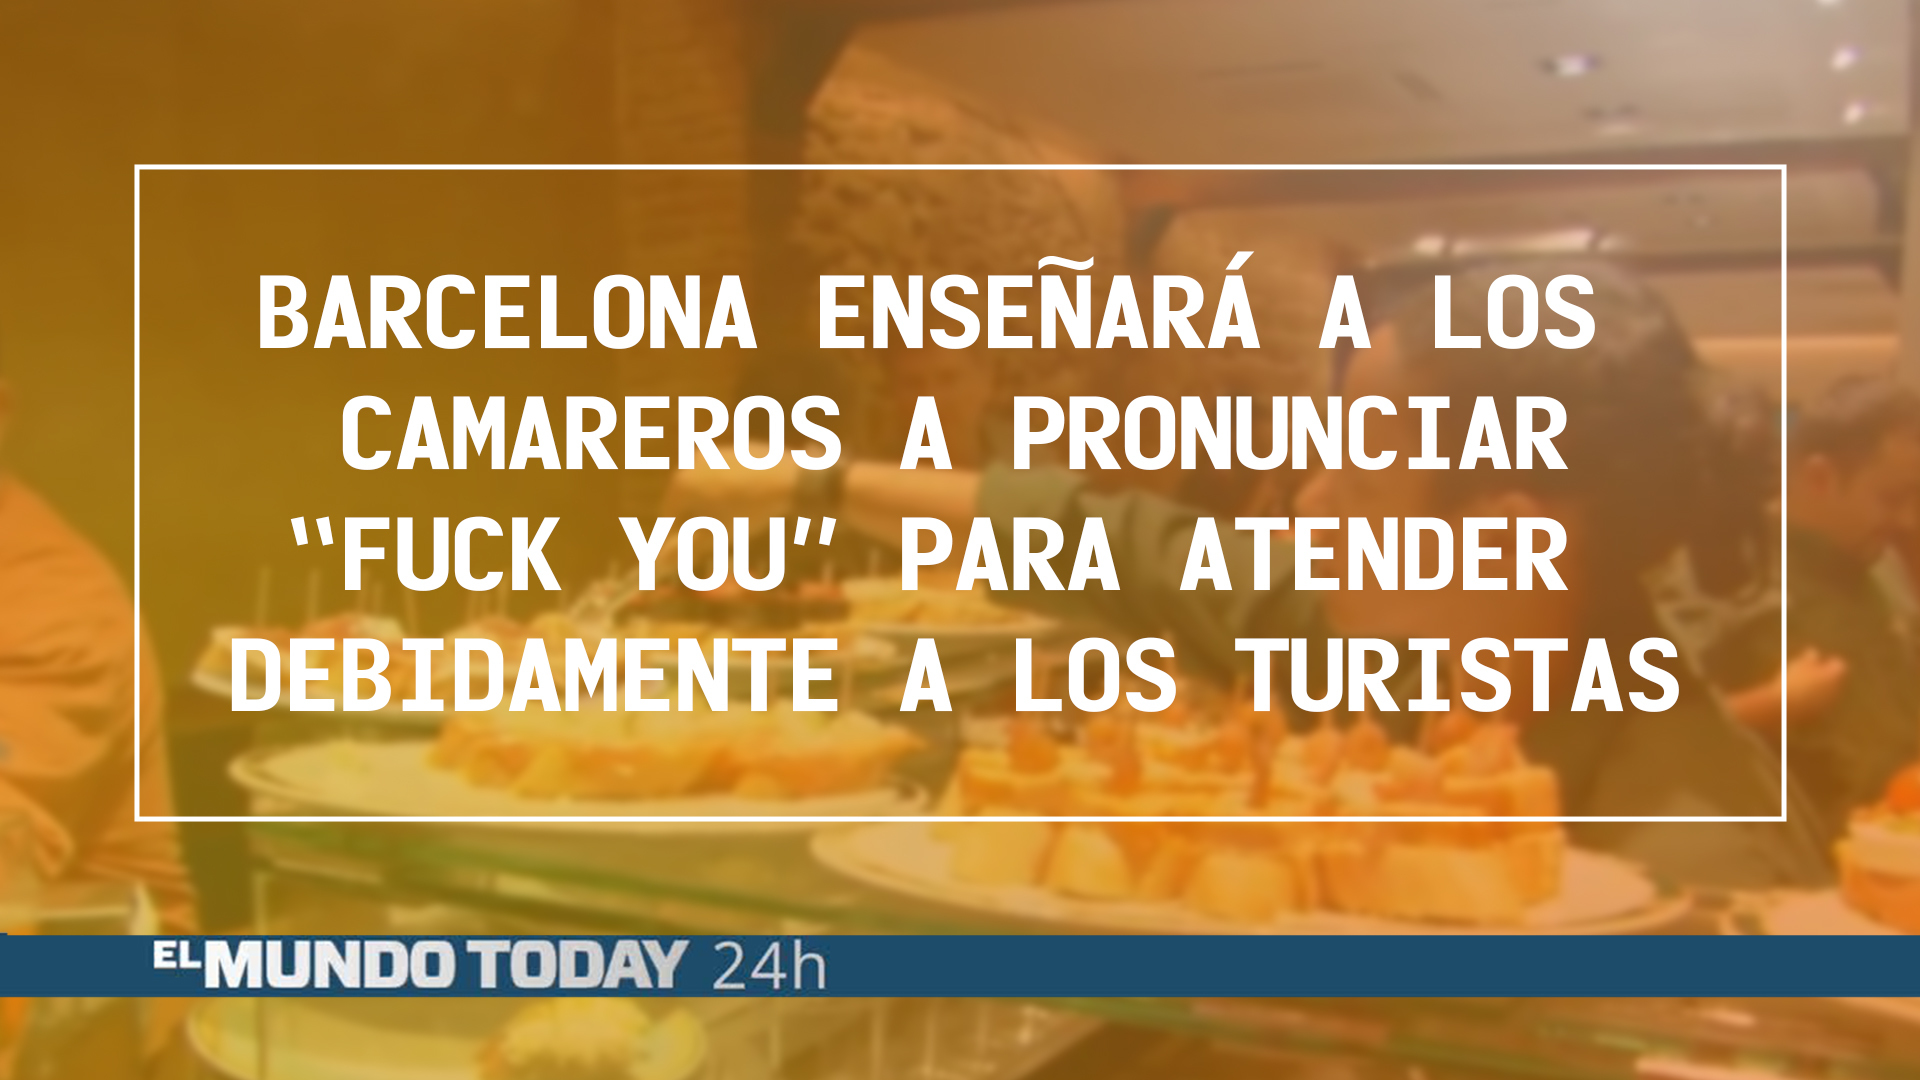 Temporada 1 Barcelona enseñará a los camareros a pronunciar “Fuck You” para atender debidamente a los turistas